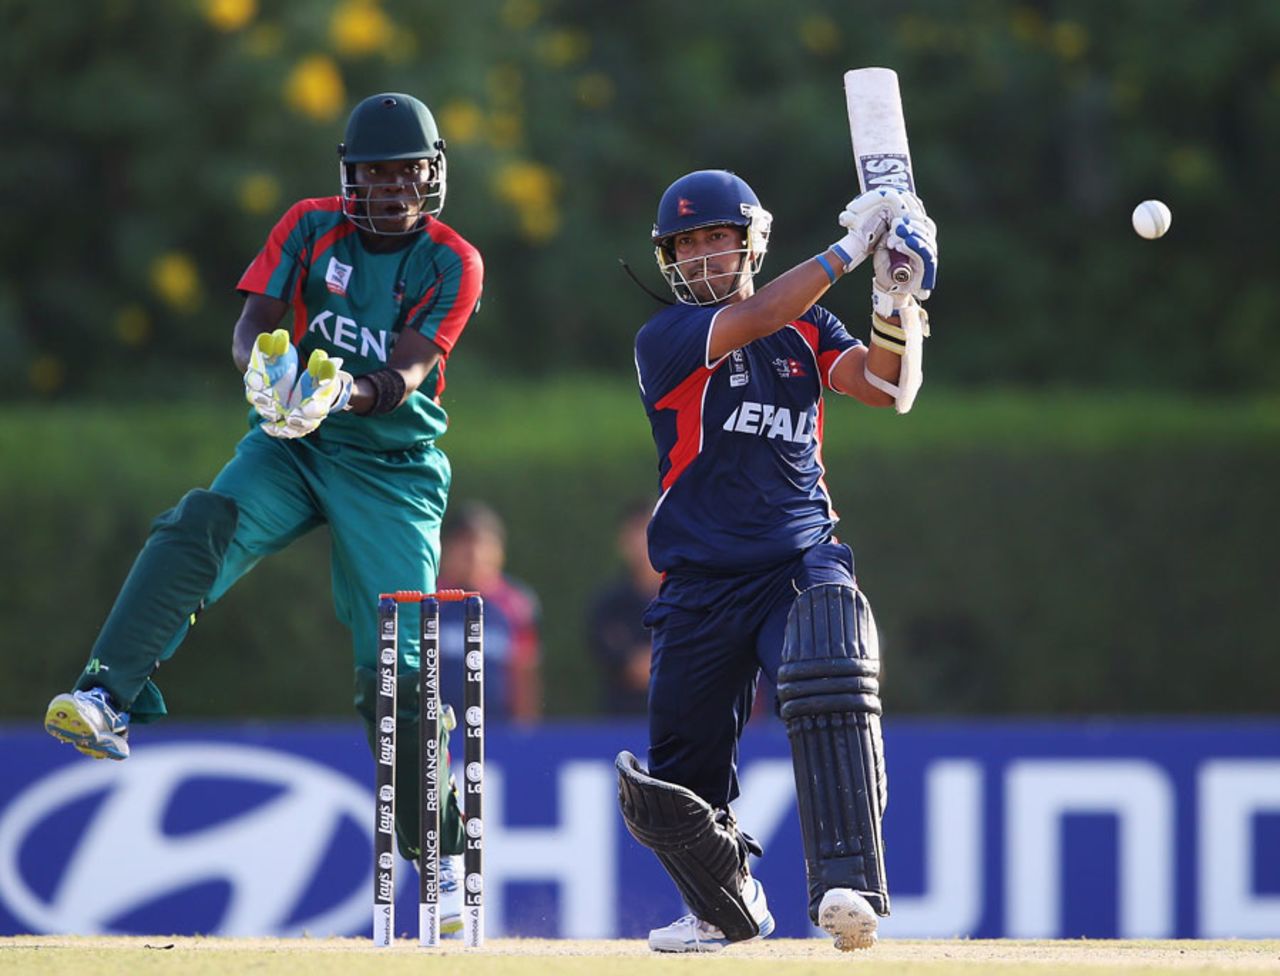 Subash Khakurel scored 54 opening the batting, Kenya v Nepal, ICC World Twenty20 Qualifier, Group B, Dubai, November 16, 2013